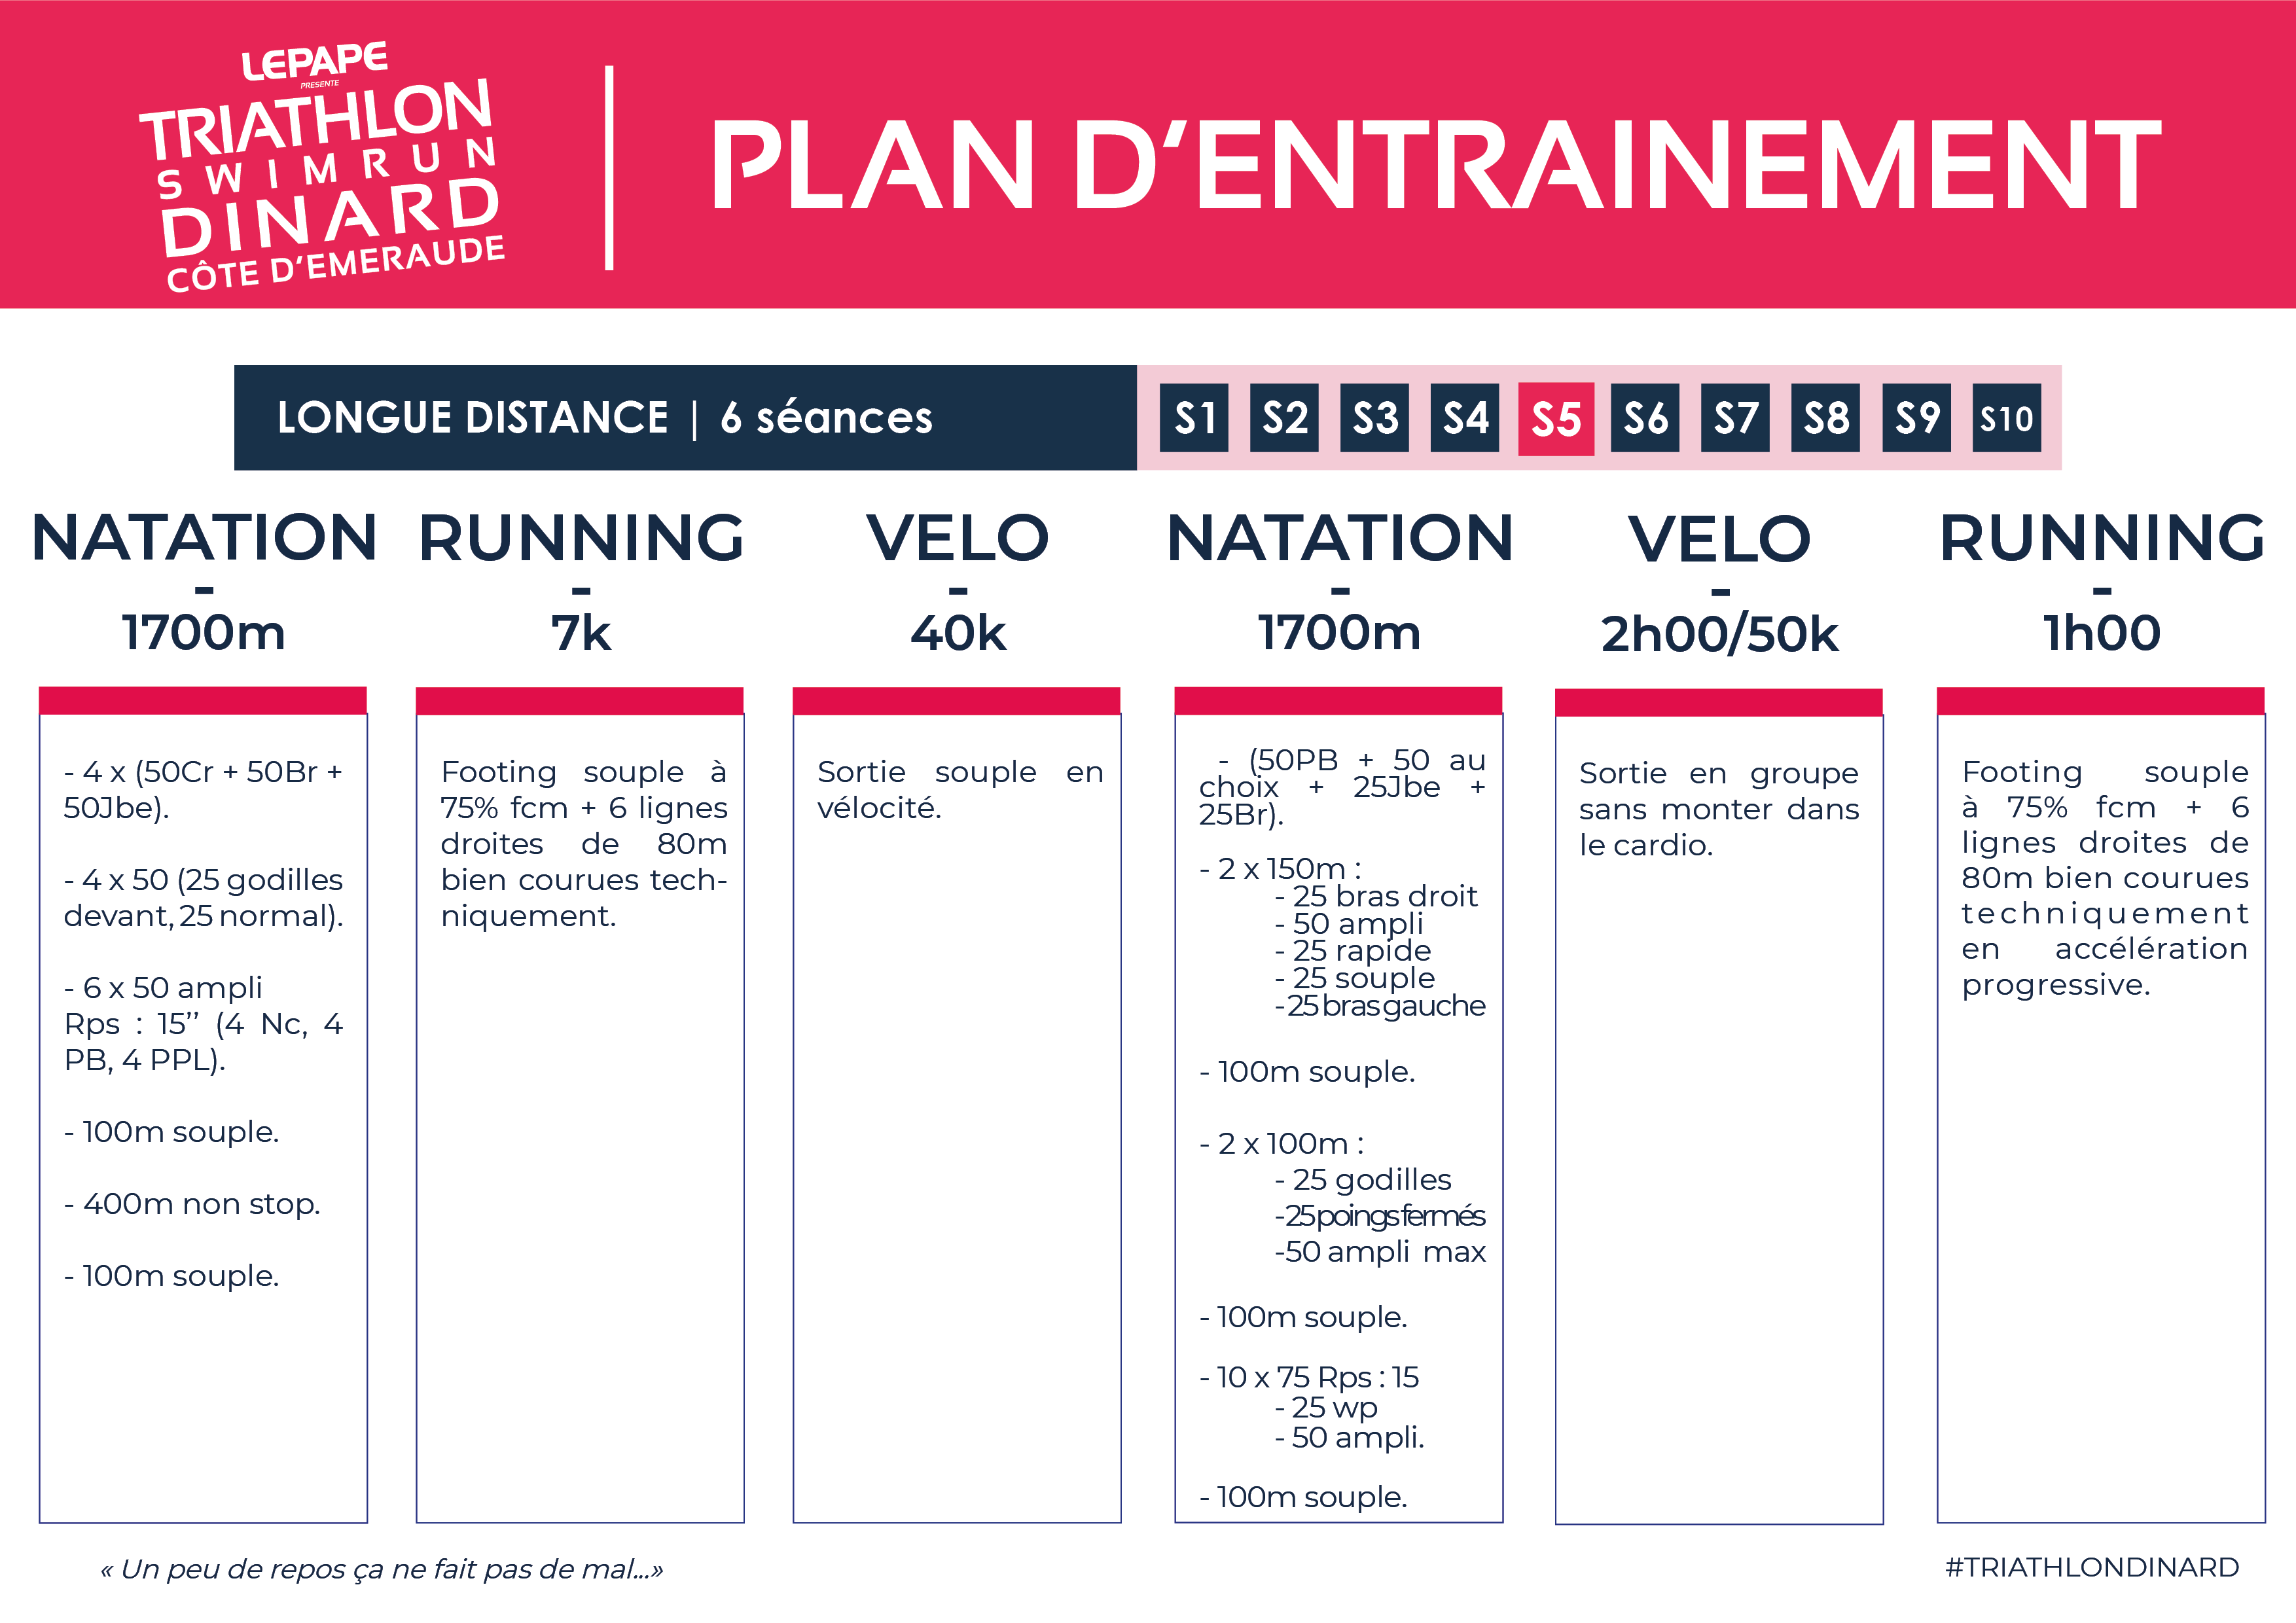 Plan d'entrainement longue distance triathlon de dinard